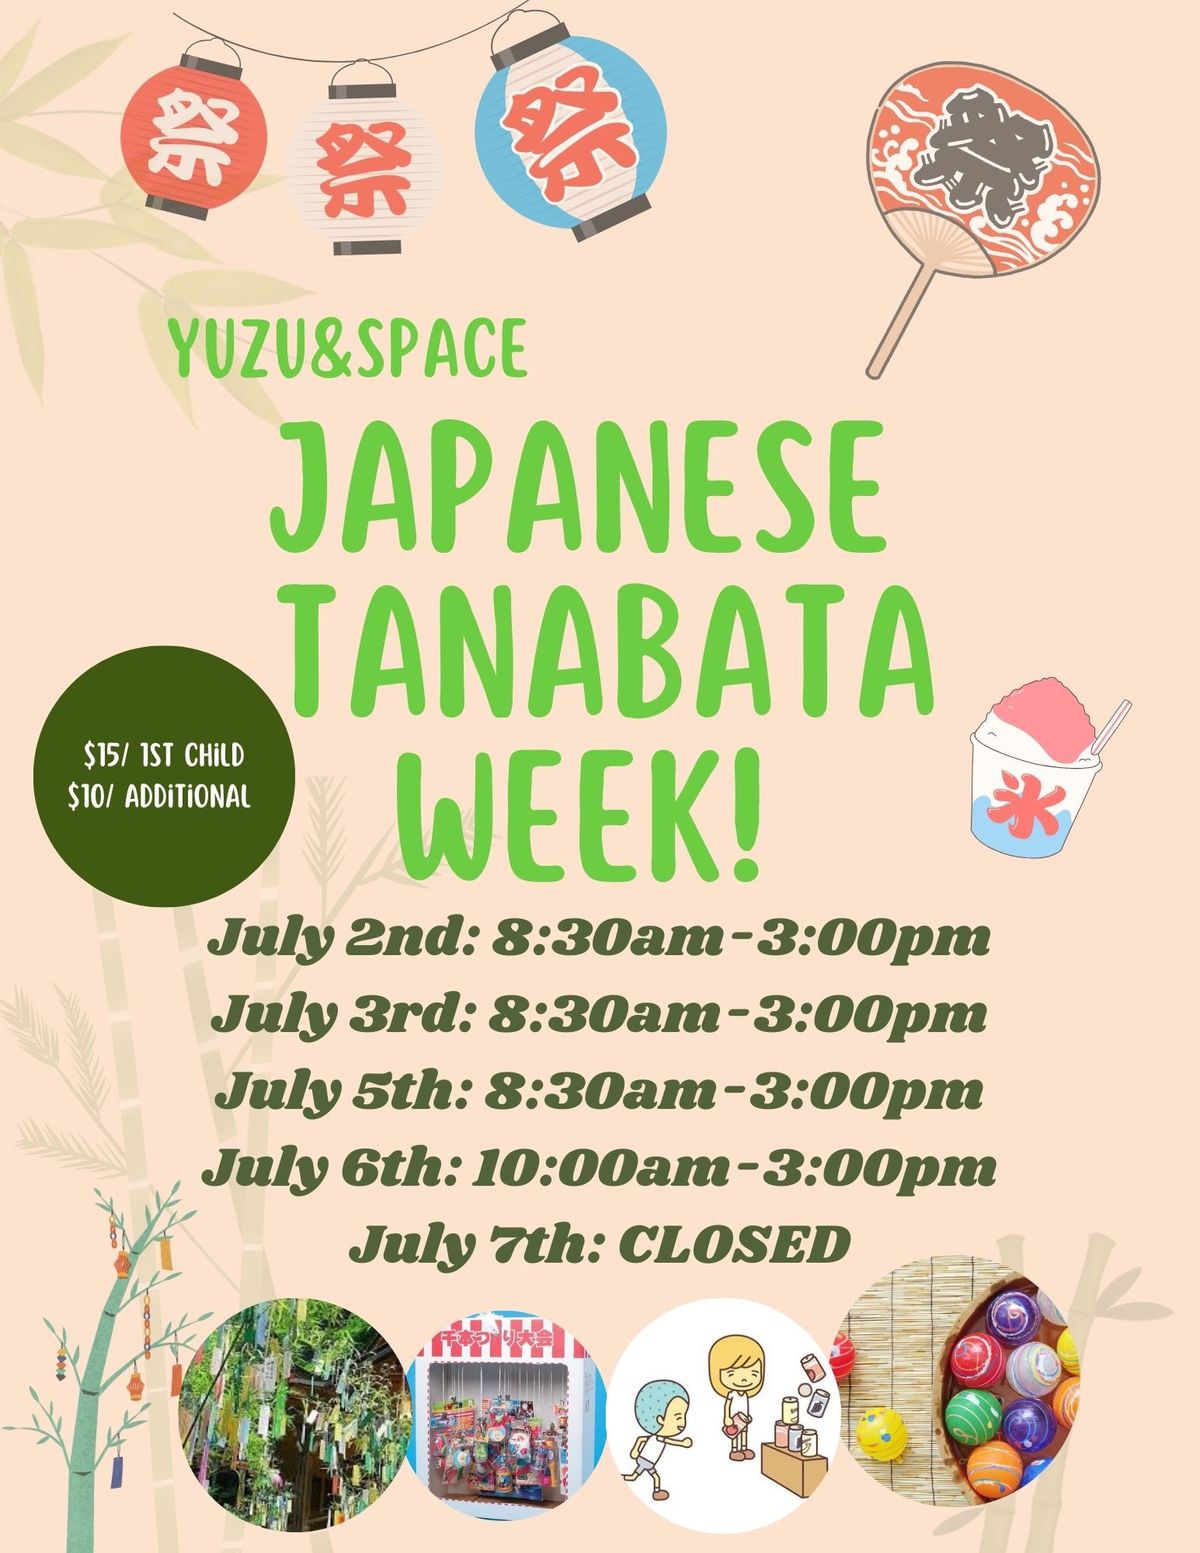 Japanese Tanabata (Star Festival) Week!